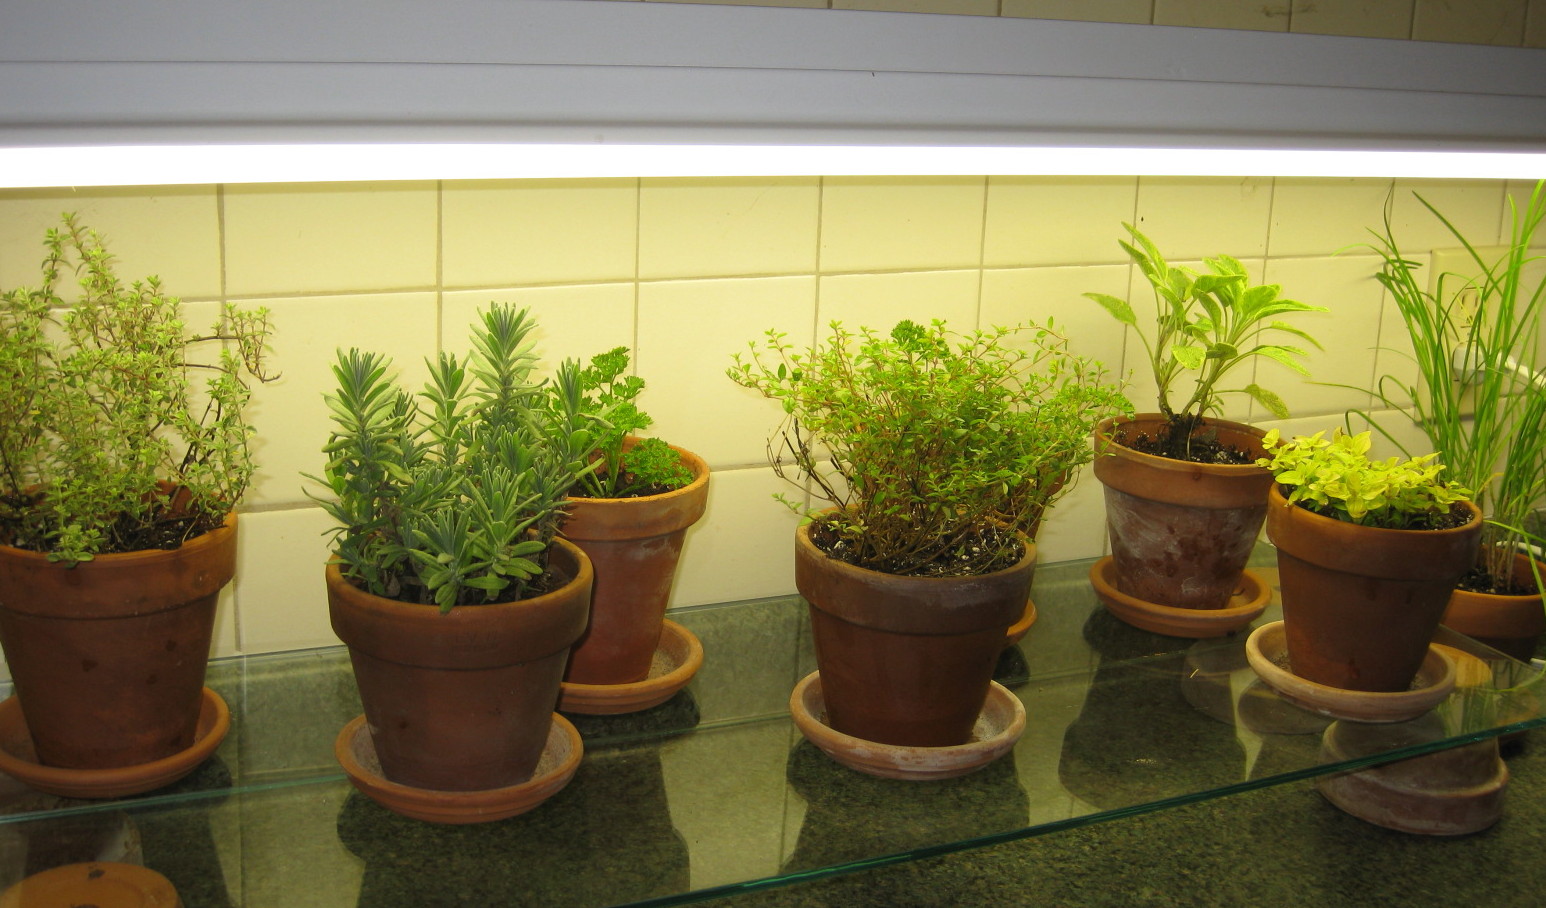 Kitchen Counter Herb Garden